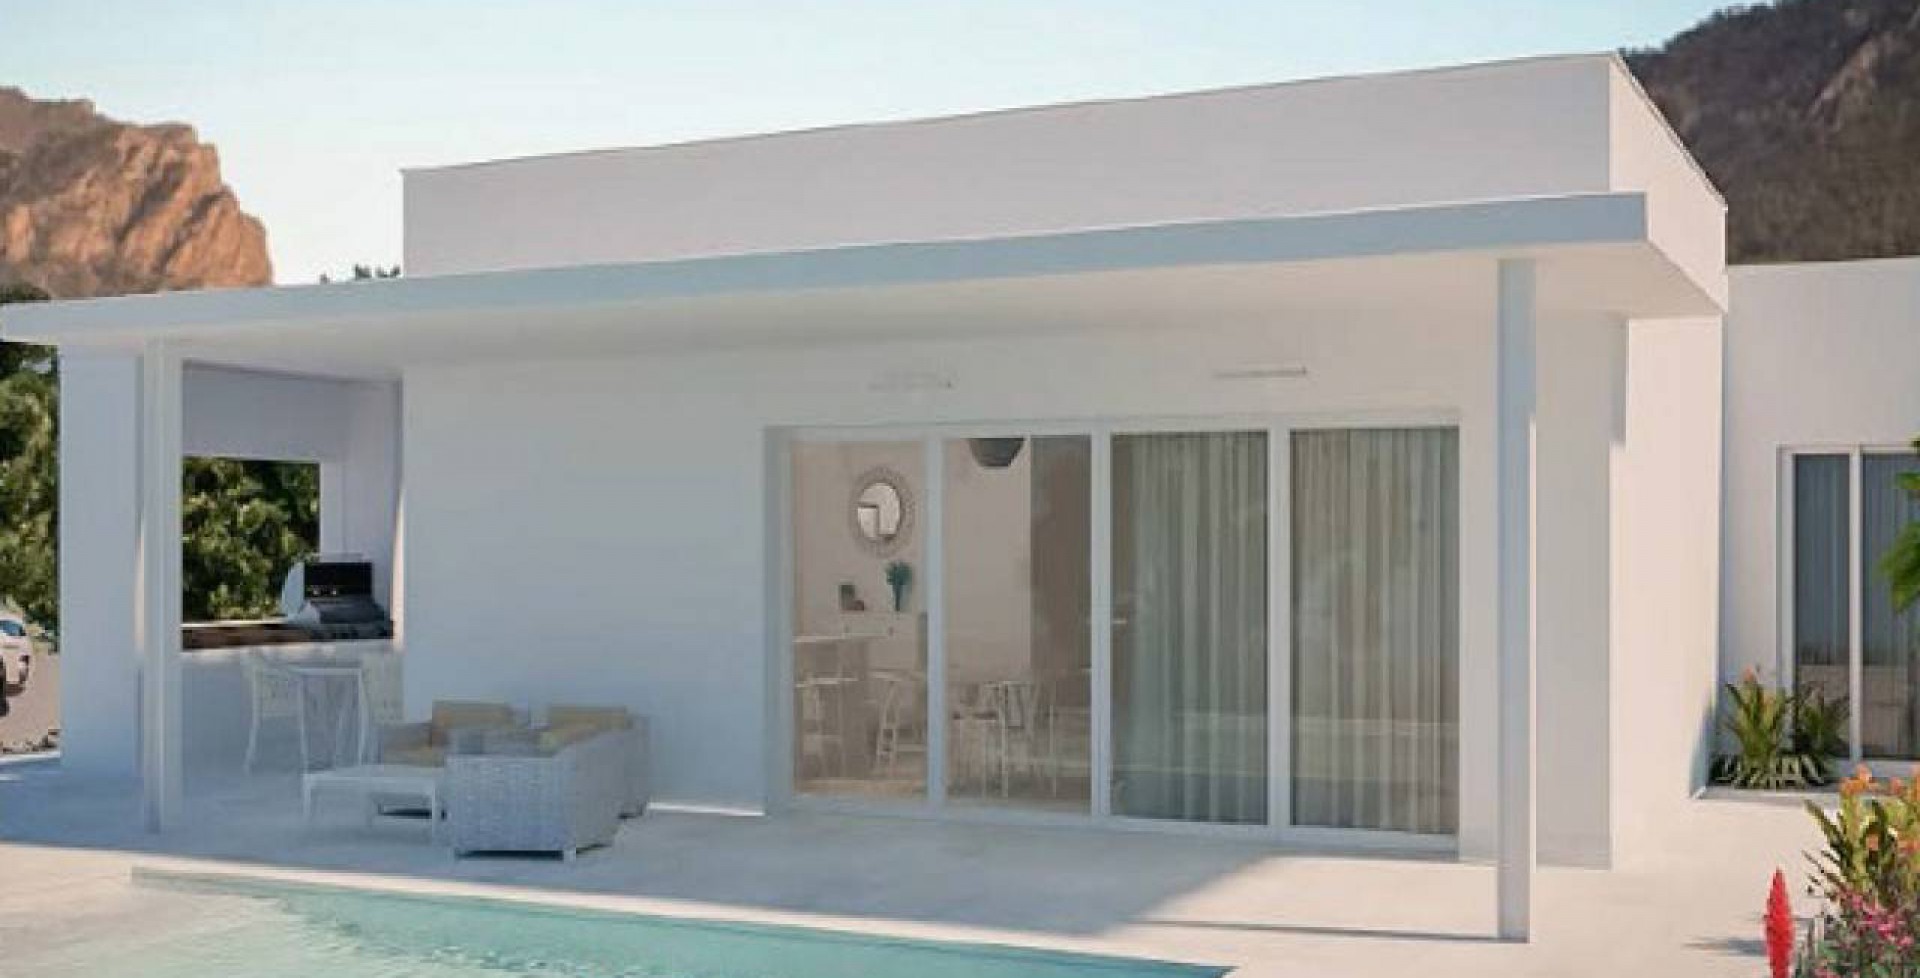 villa alejada de estilo ibicenco con piscina privado, Ricote, Murcia, España